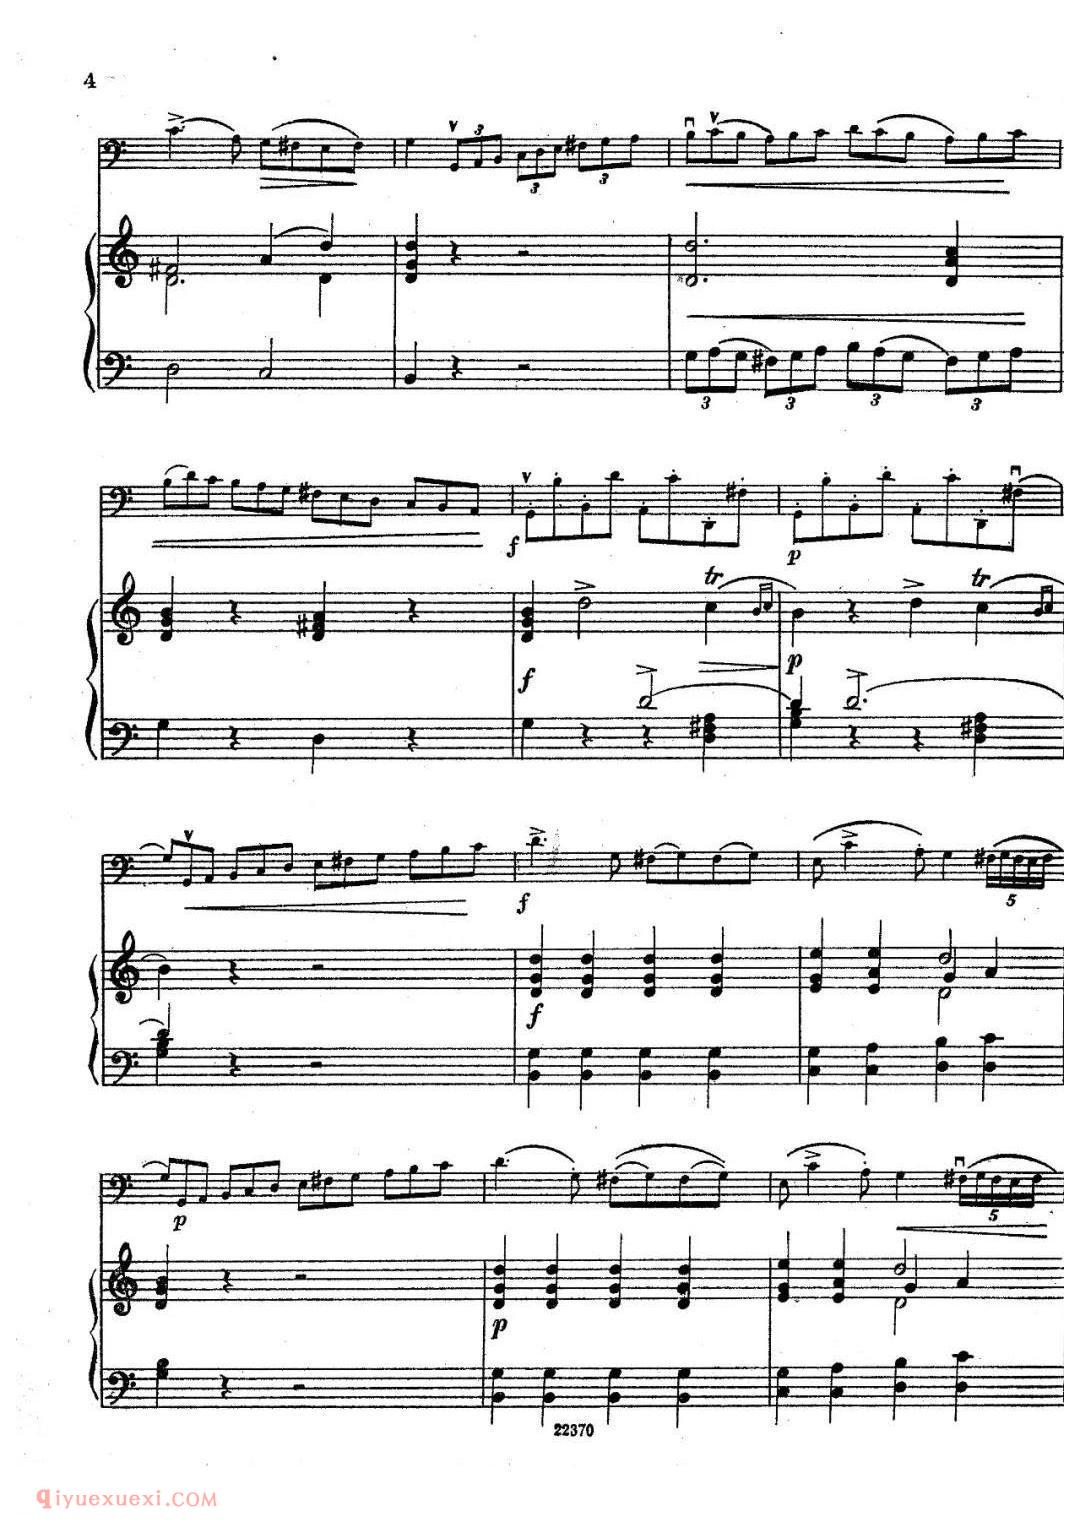 布列瓦尔C大调奏鸣曲 Op.40 No.1大提琴谱 钢琴伴奏谱